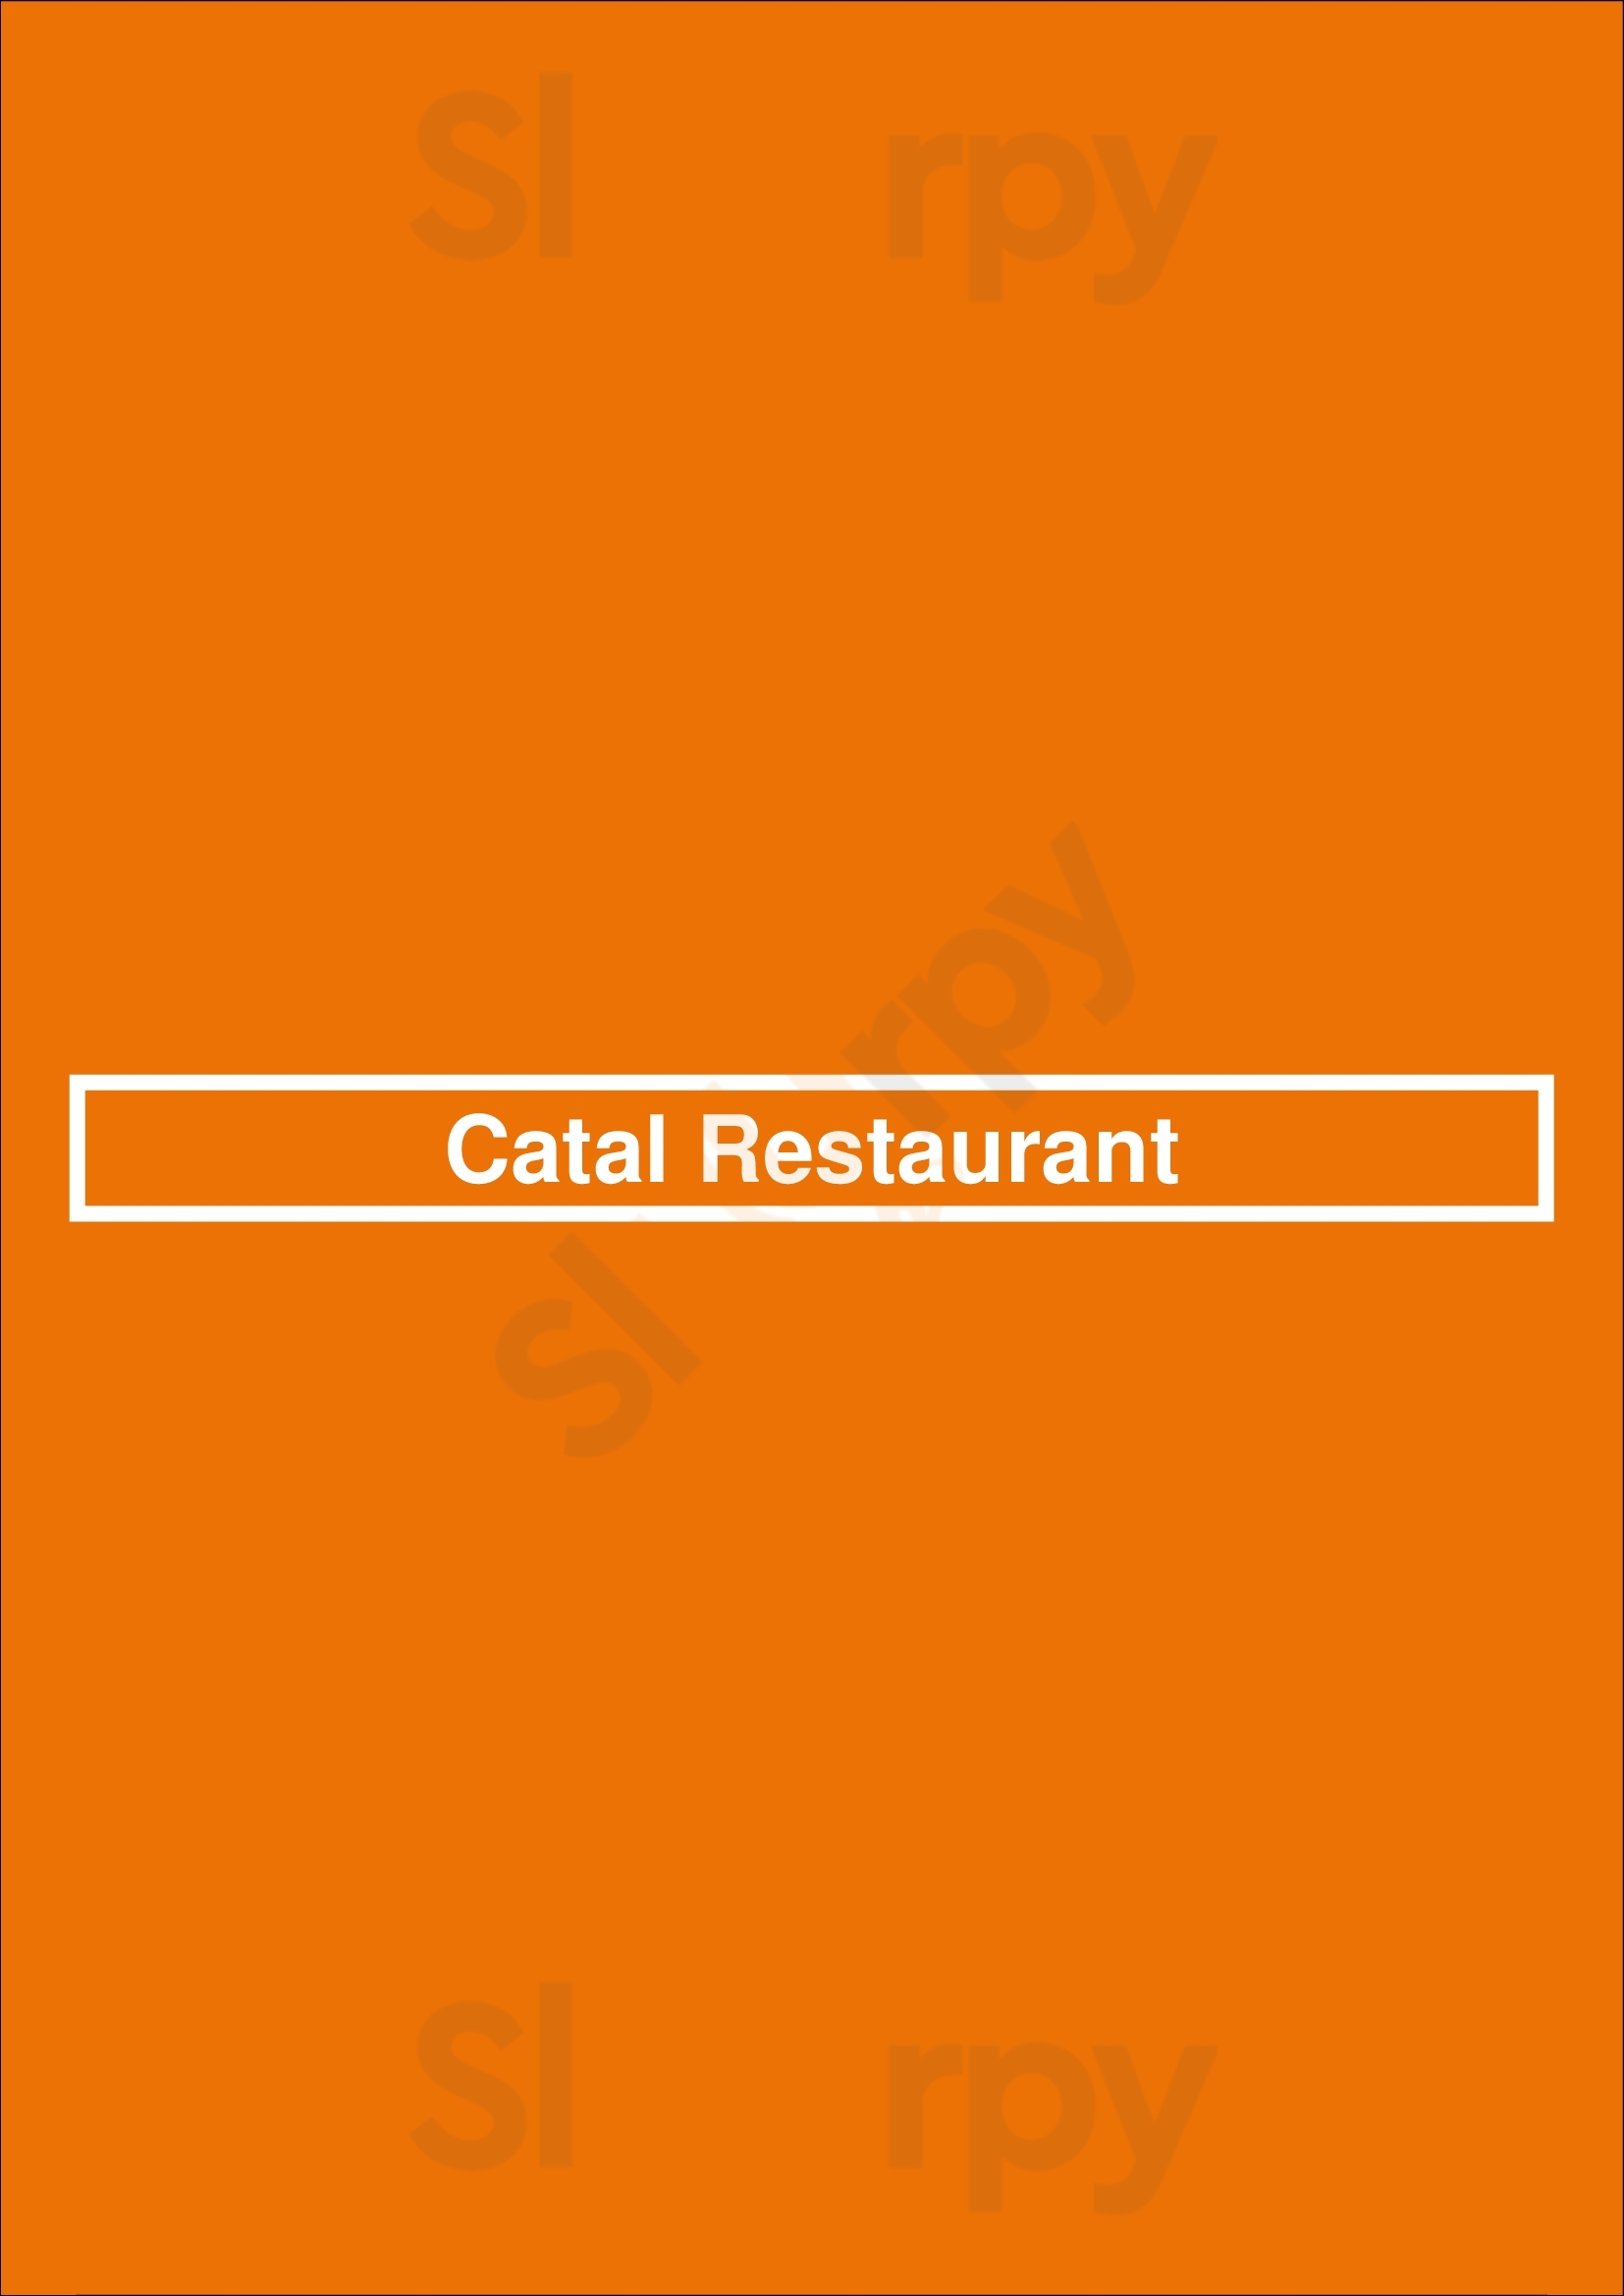 Catal Restaurant Anaheim Menu - 1